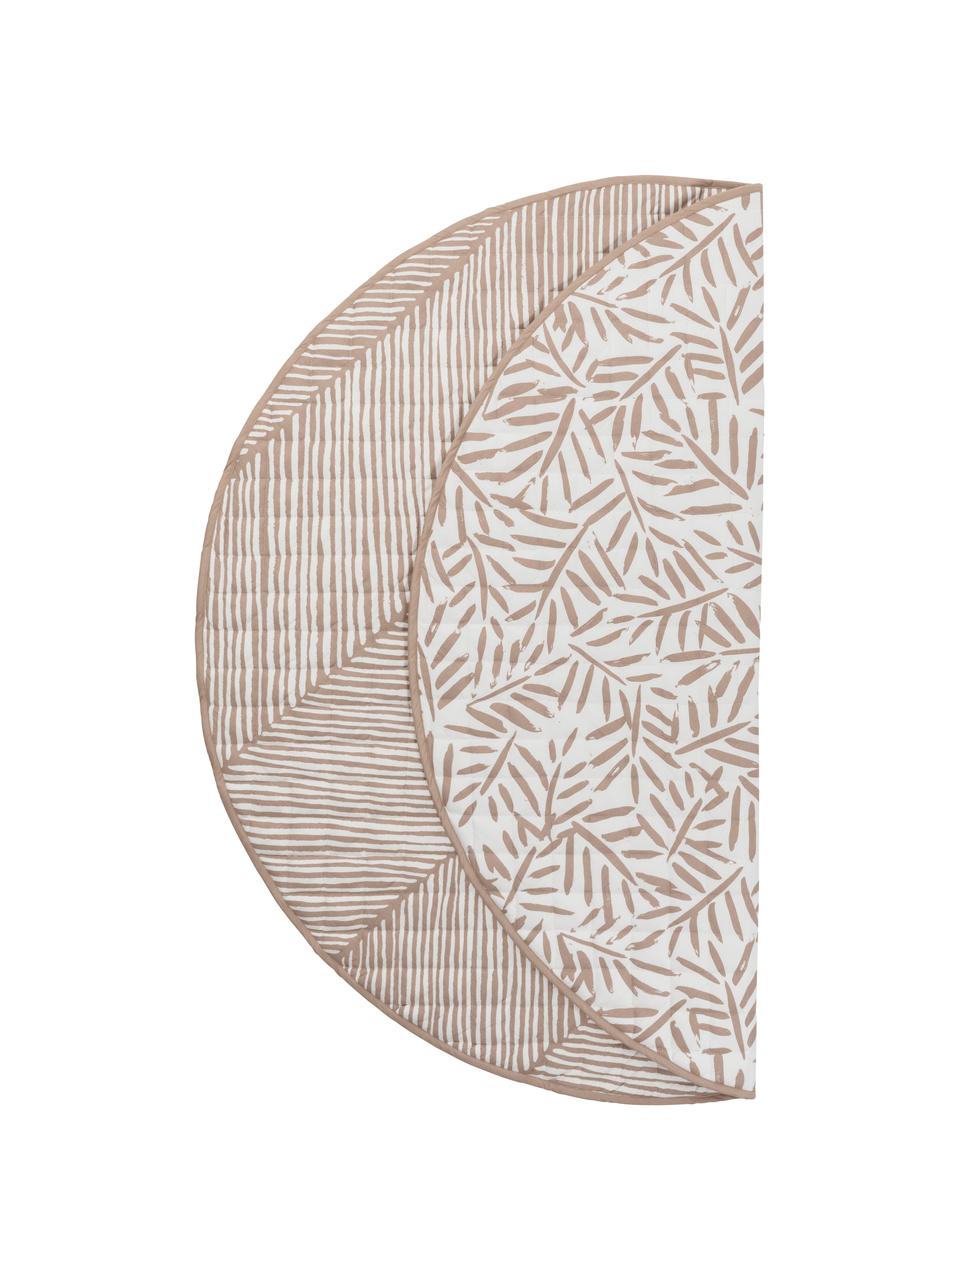 Wende-Spielmatte Seashell, Bezug: 100 % Baumwolle, Rosa, Weiß, Ø 133 cm